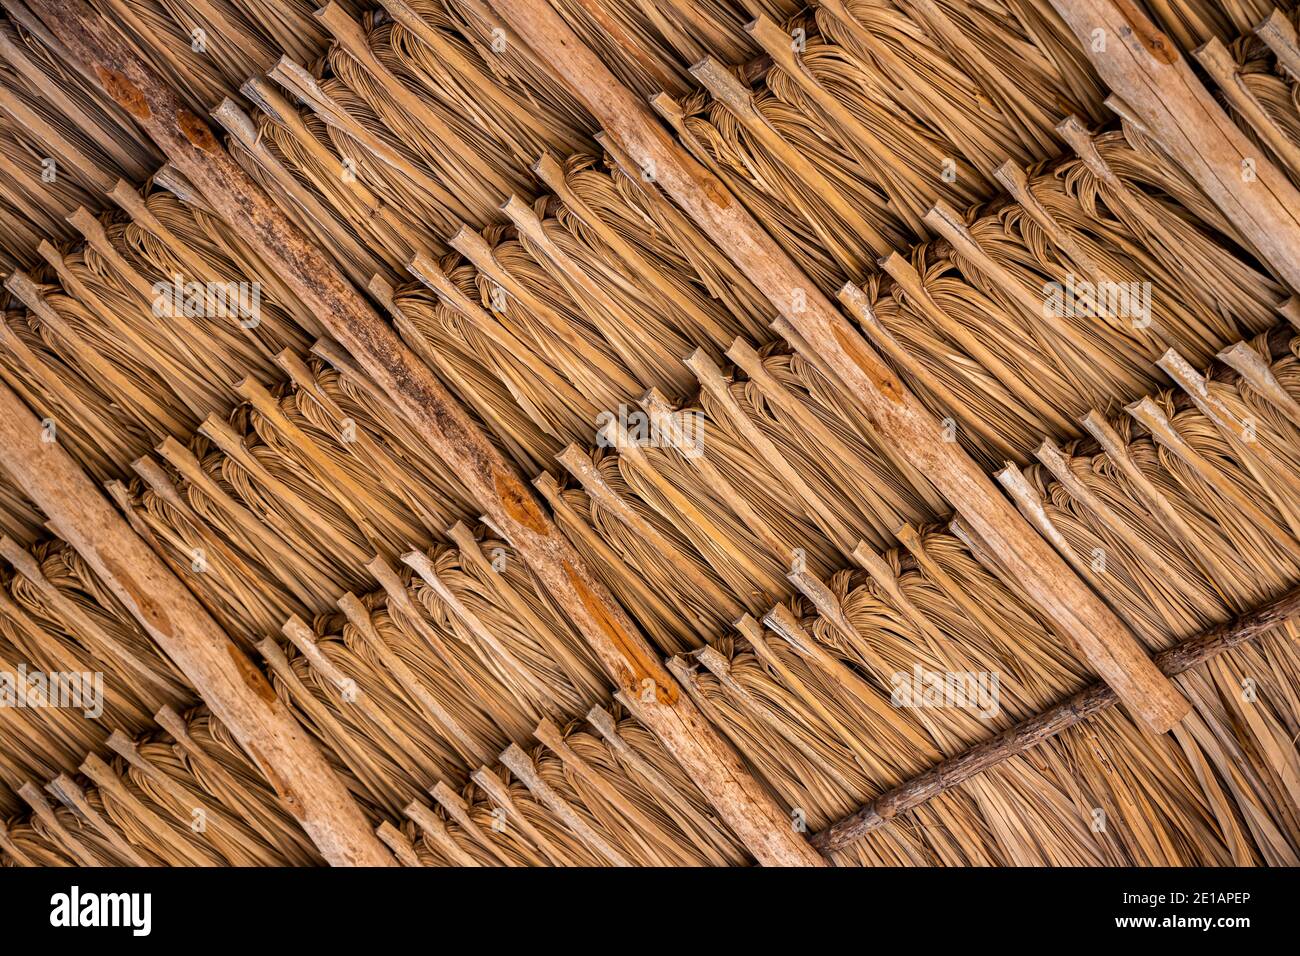 Die Details des unteren Teils eines primitiven Hauses Dachzieh Stockfoto